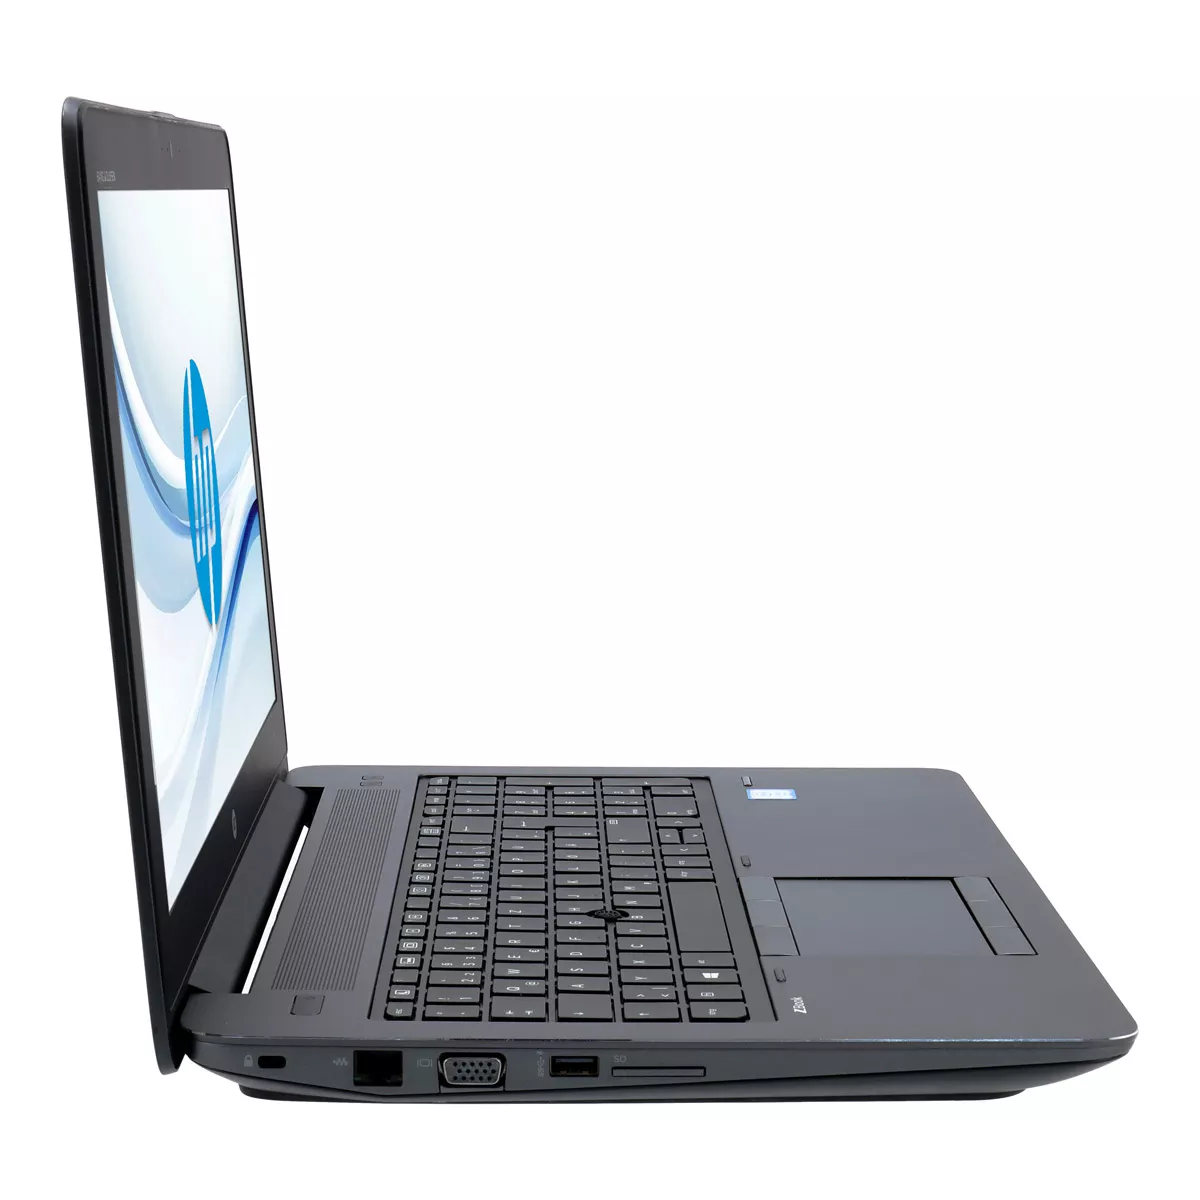 HP ZBook 15 G3 Core i7 6700HQ Full-HD nVidia Quadro M2000M 240 GB M.2 SSD Webcam A+